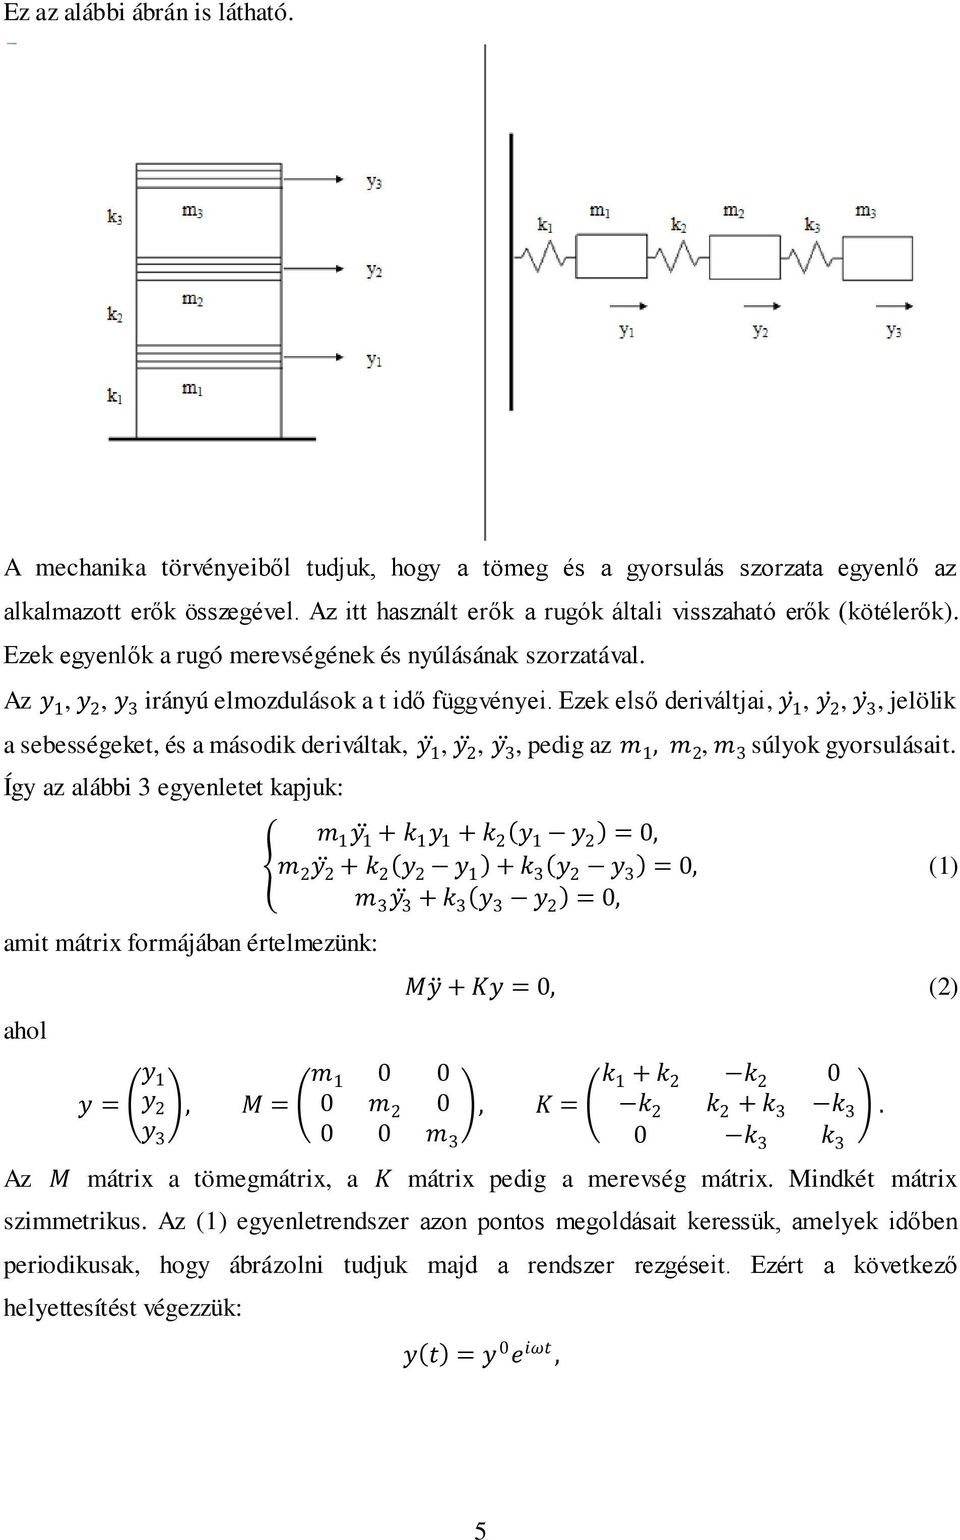 Lineáris algebra és mátrixok alkalmazása a numerikus analízisben - PDF Free  Download